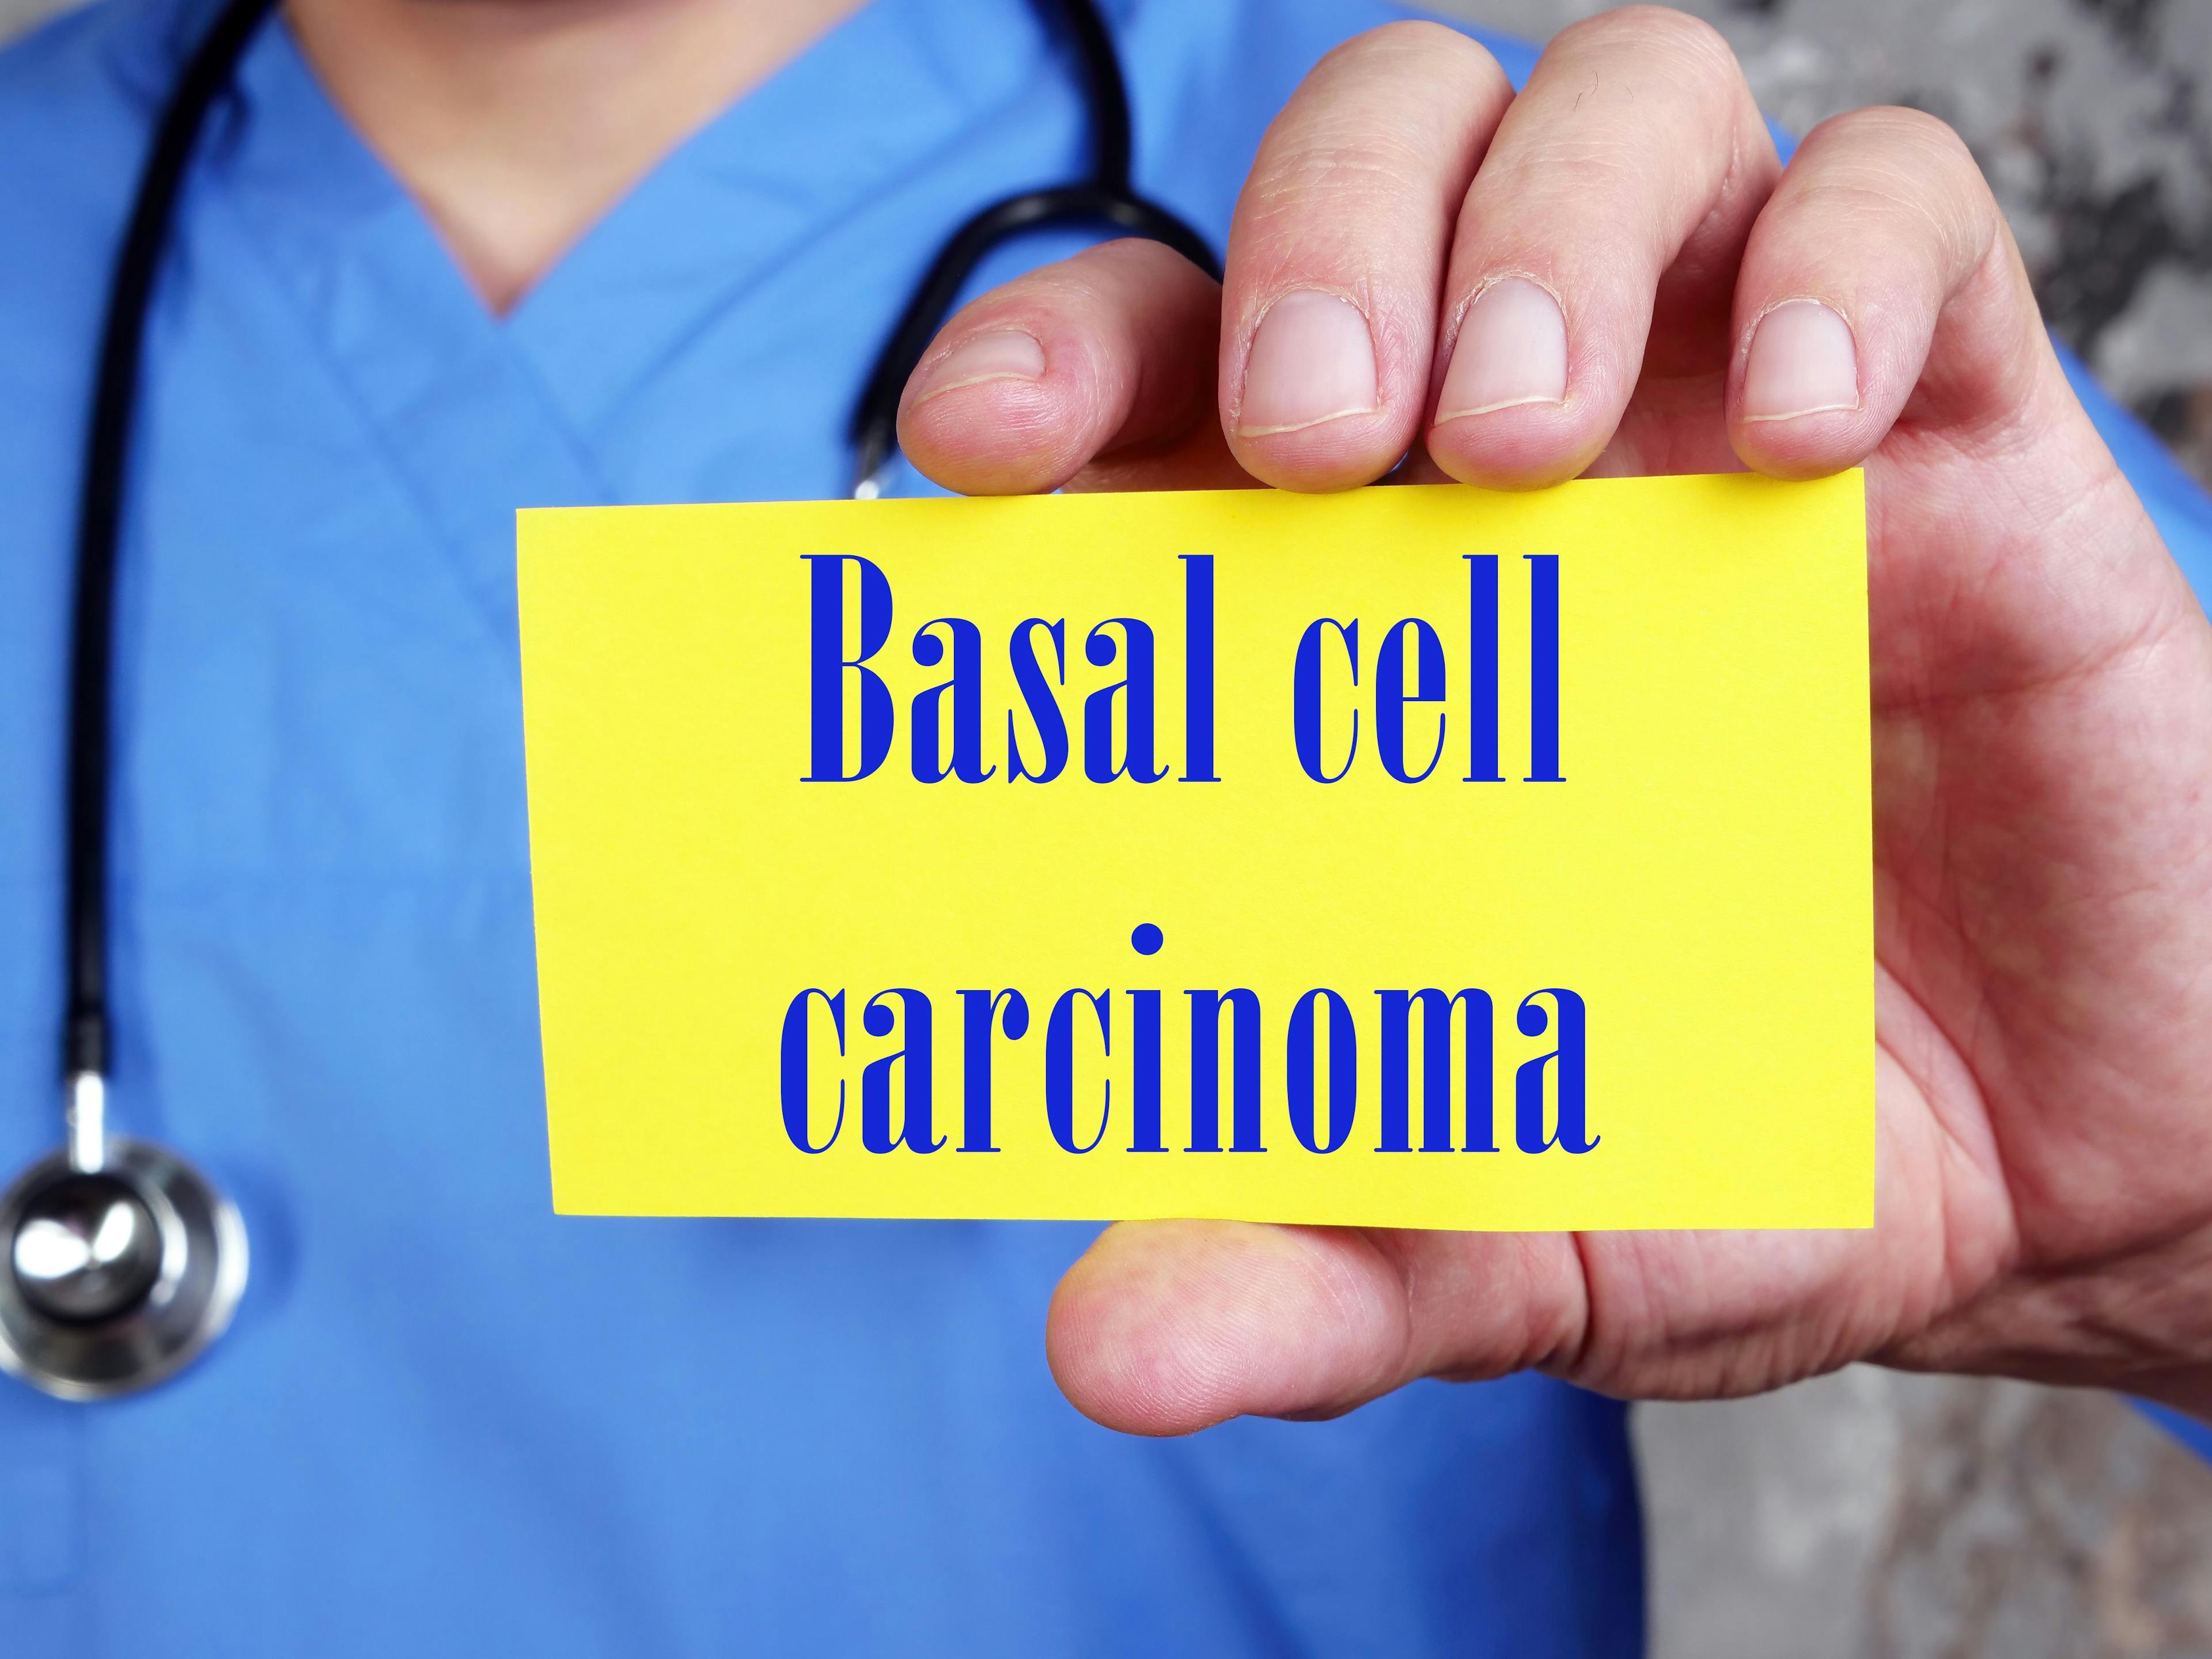 Sign Reading Basal Cell Carcinoma | image credit: Yurii Kibalnik - stock.adobe.com